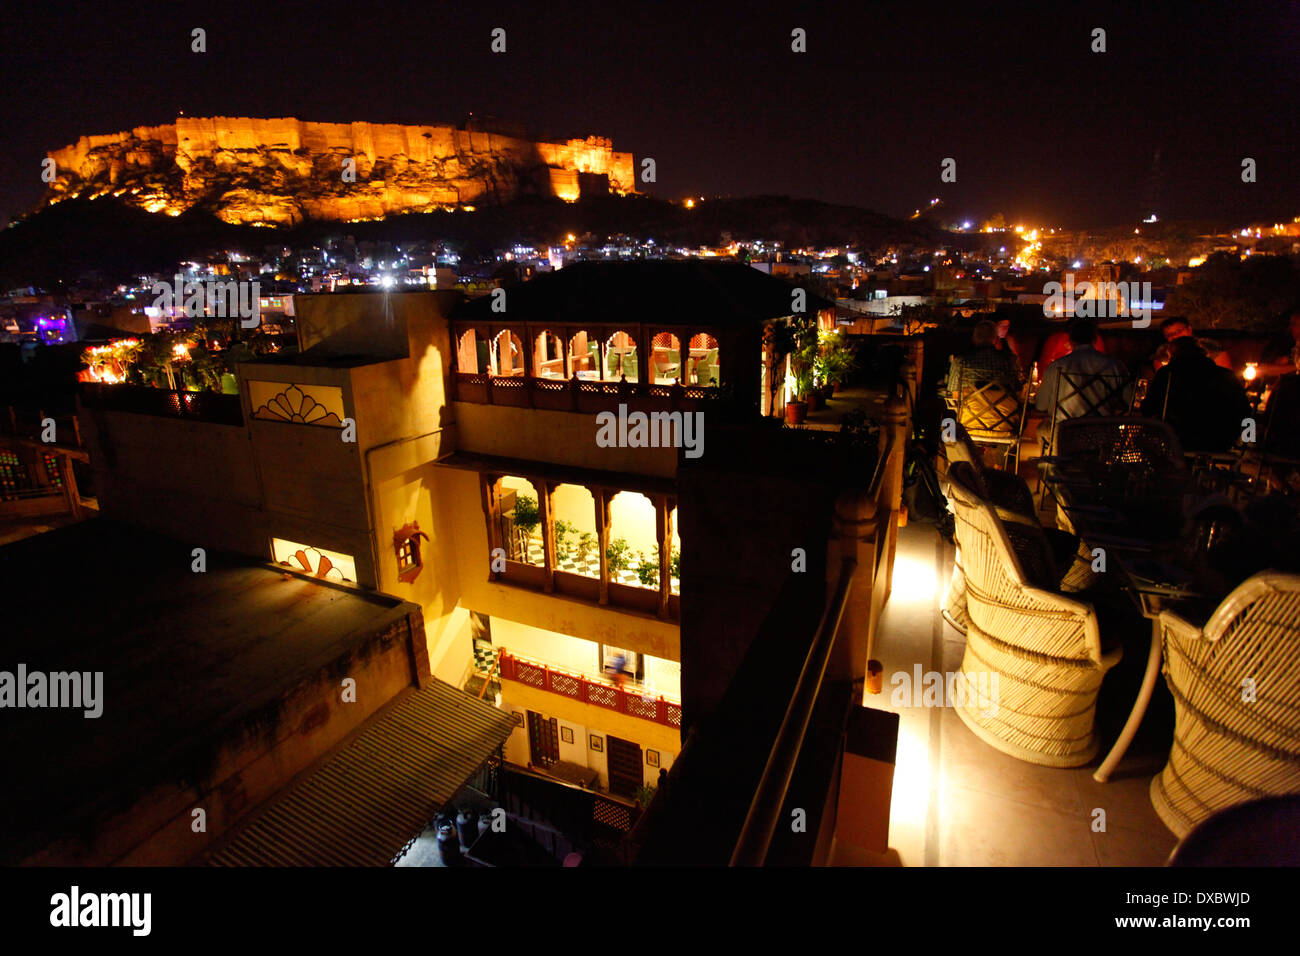 Vue sur le "fort ehrangarh' la nuit à partir de la 'Pal Haveli' restaurant terrasse. Jodhpur, Rajasthan, Inde. Banque D'Images